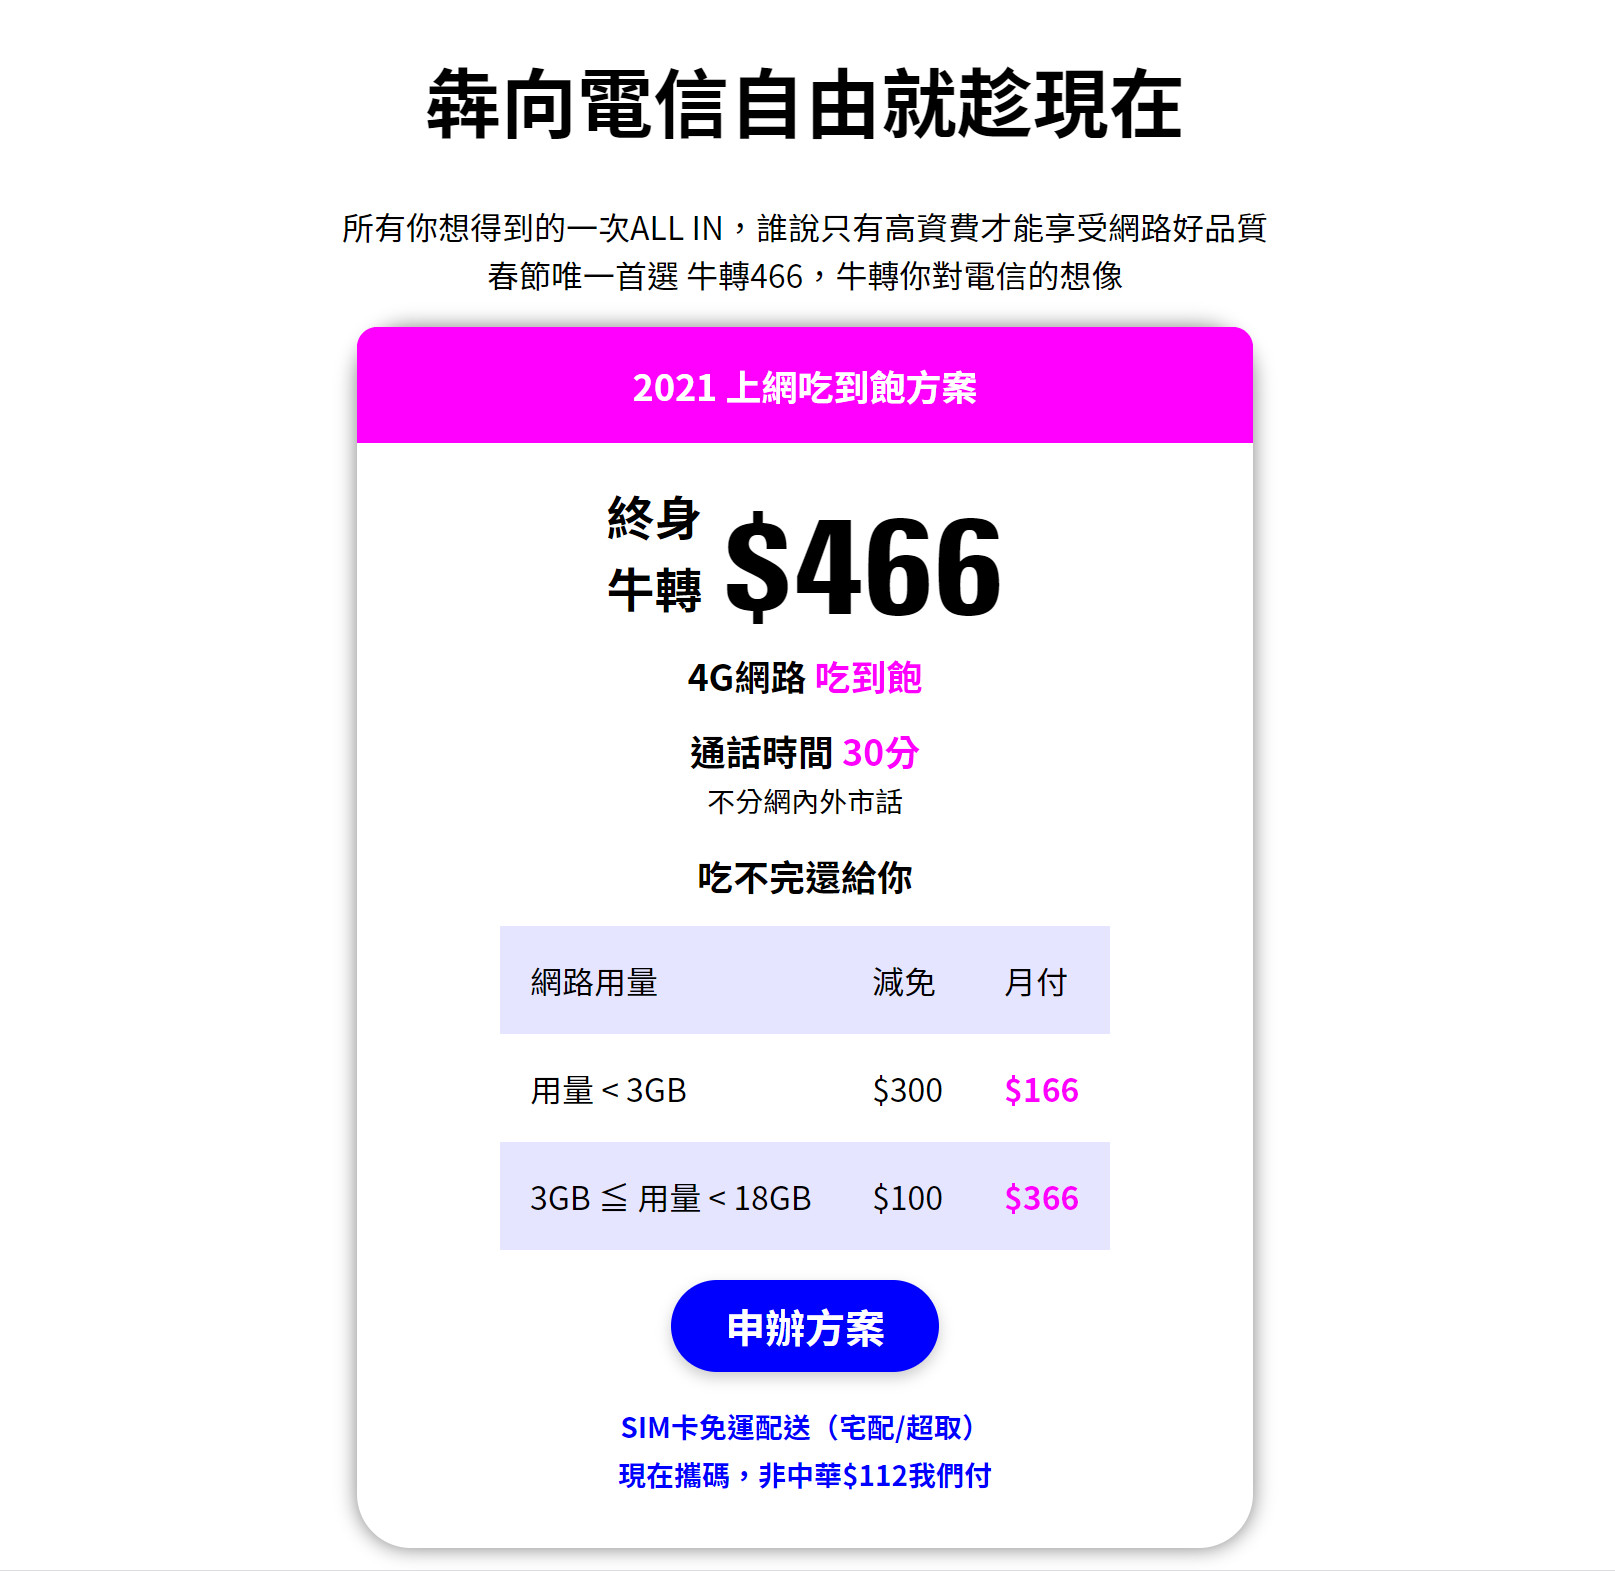 【無框行動】新春專案，中華電信大4G網路吃到飽466元，低流量只要166元!超適合搭配台灣之星雙11專案。 - 無框行動吃到飽 - 敗家達人推薦